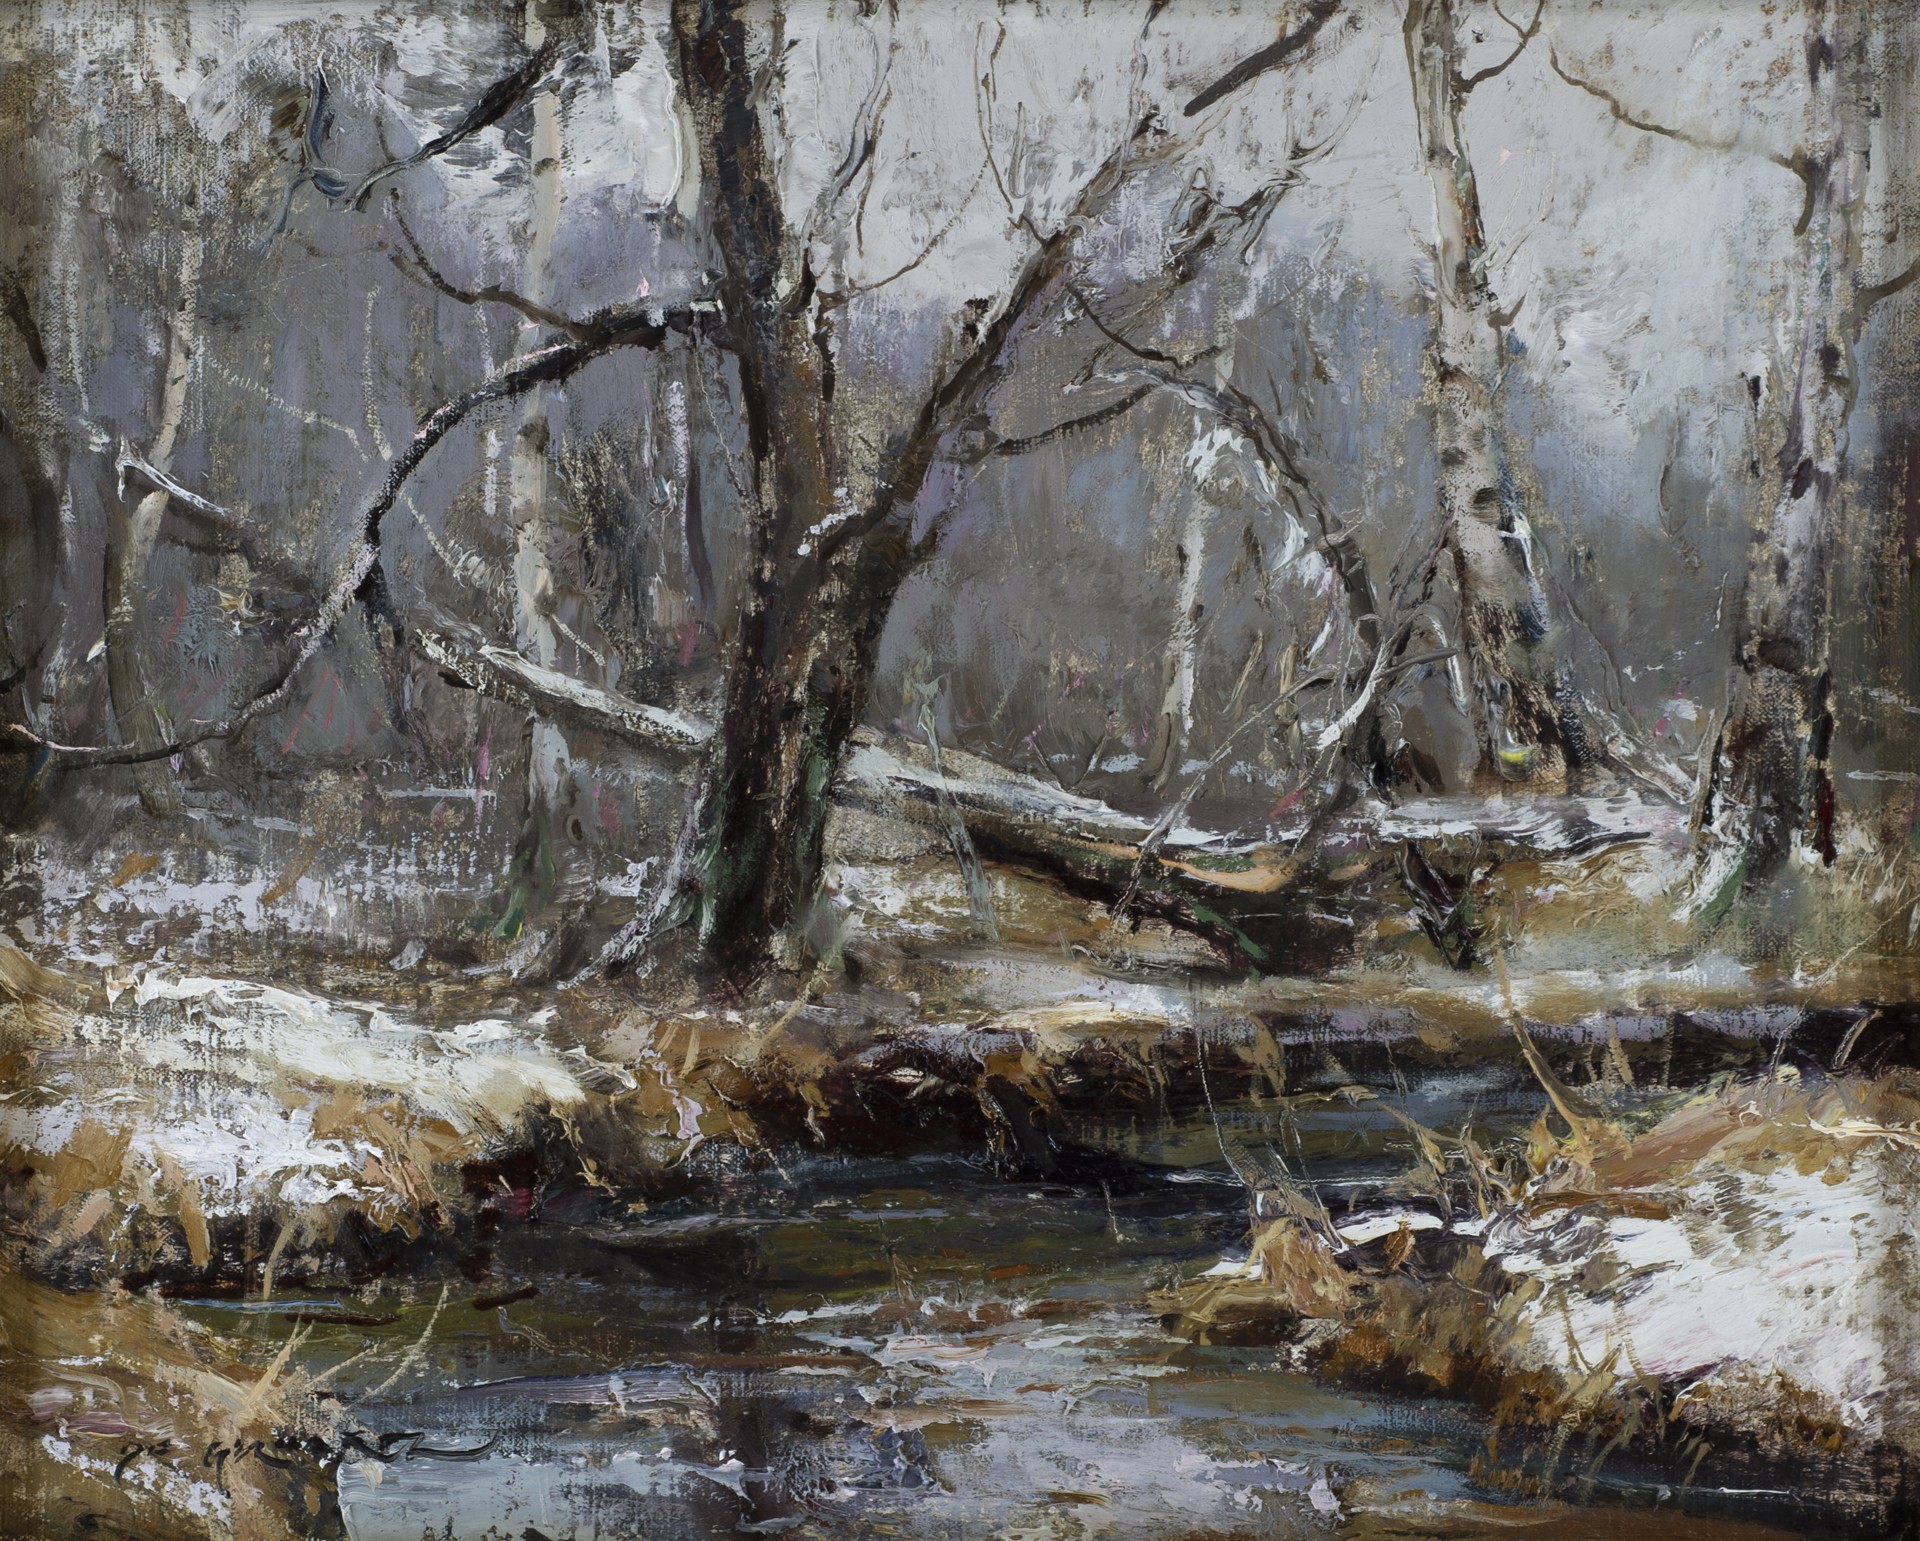 Snowfall on Birches by Daniel Gerhartz